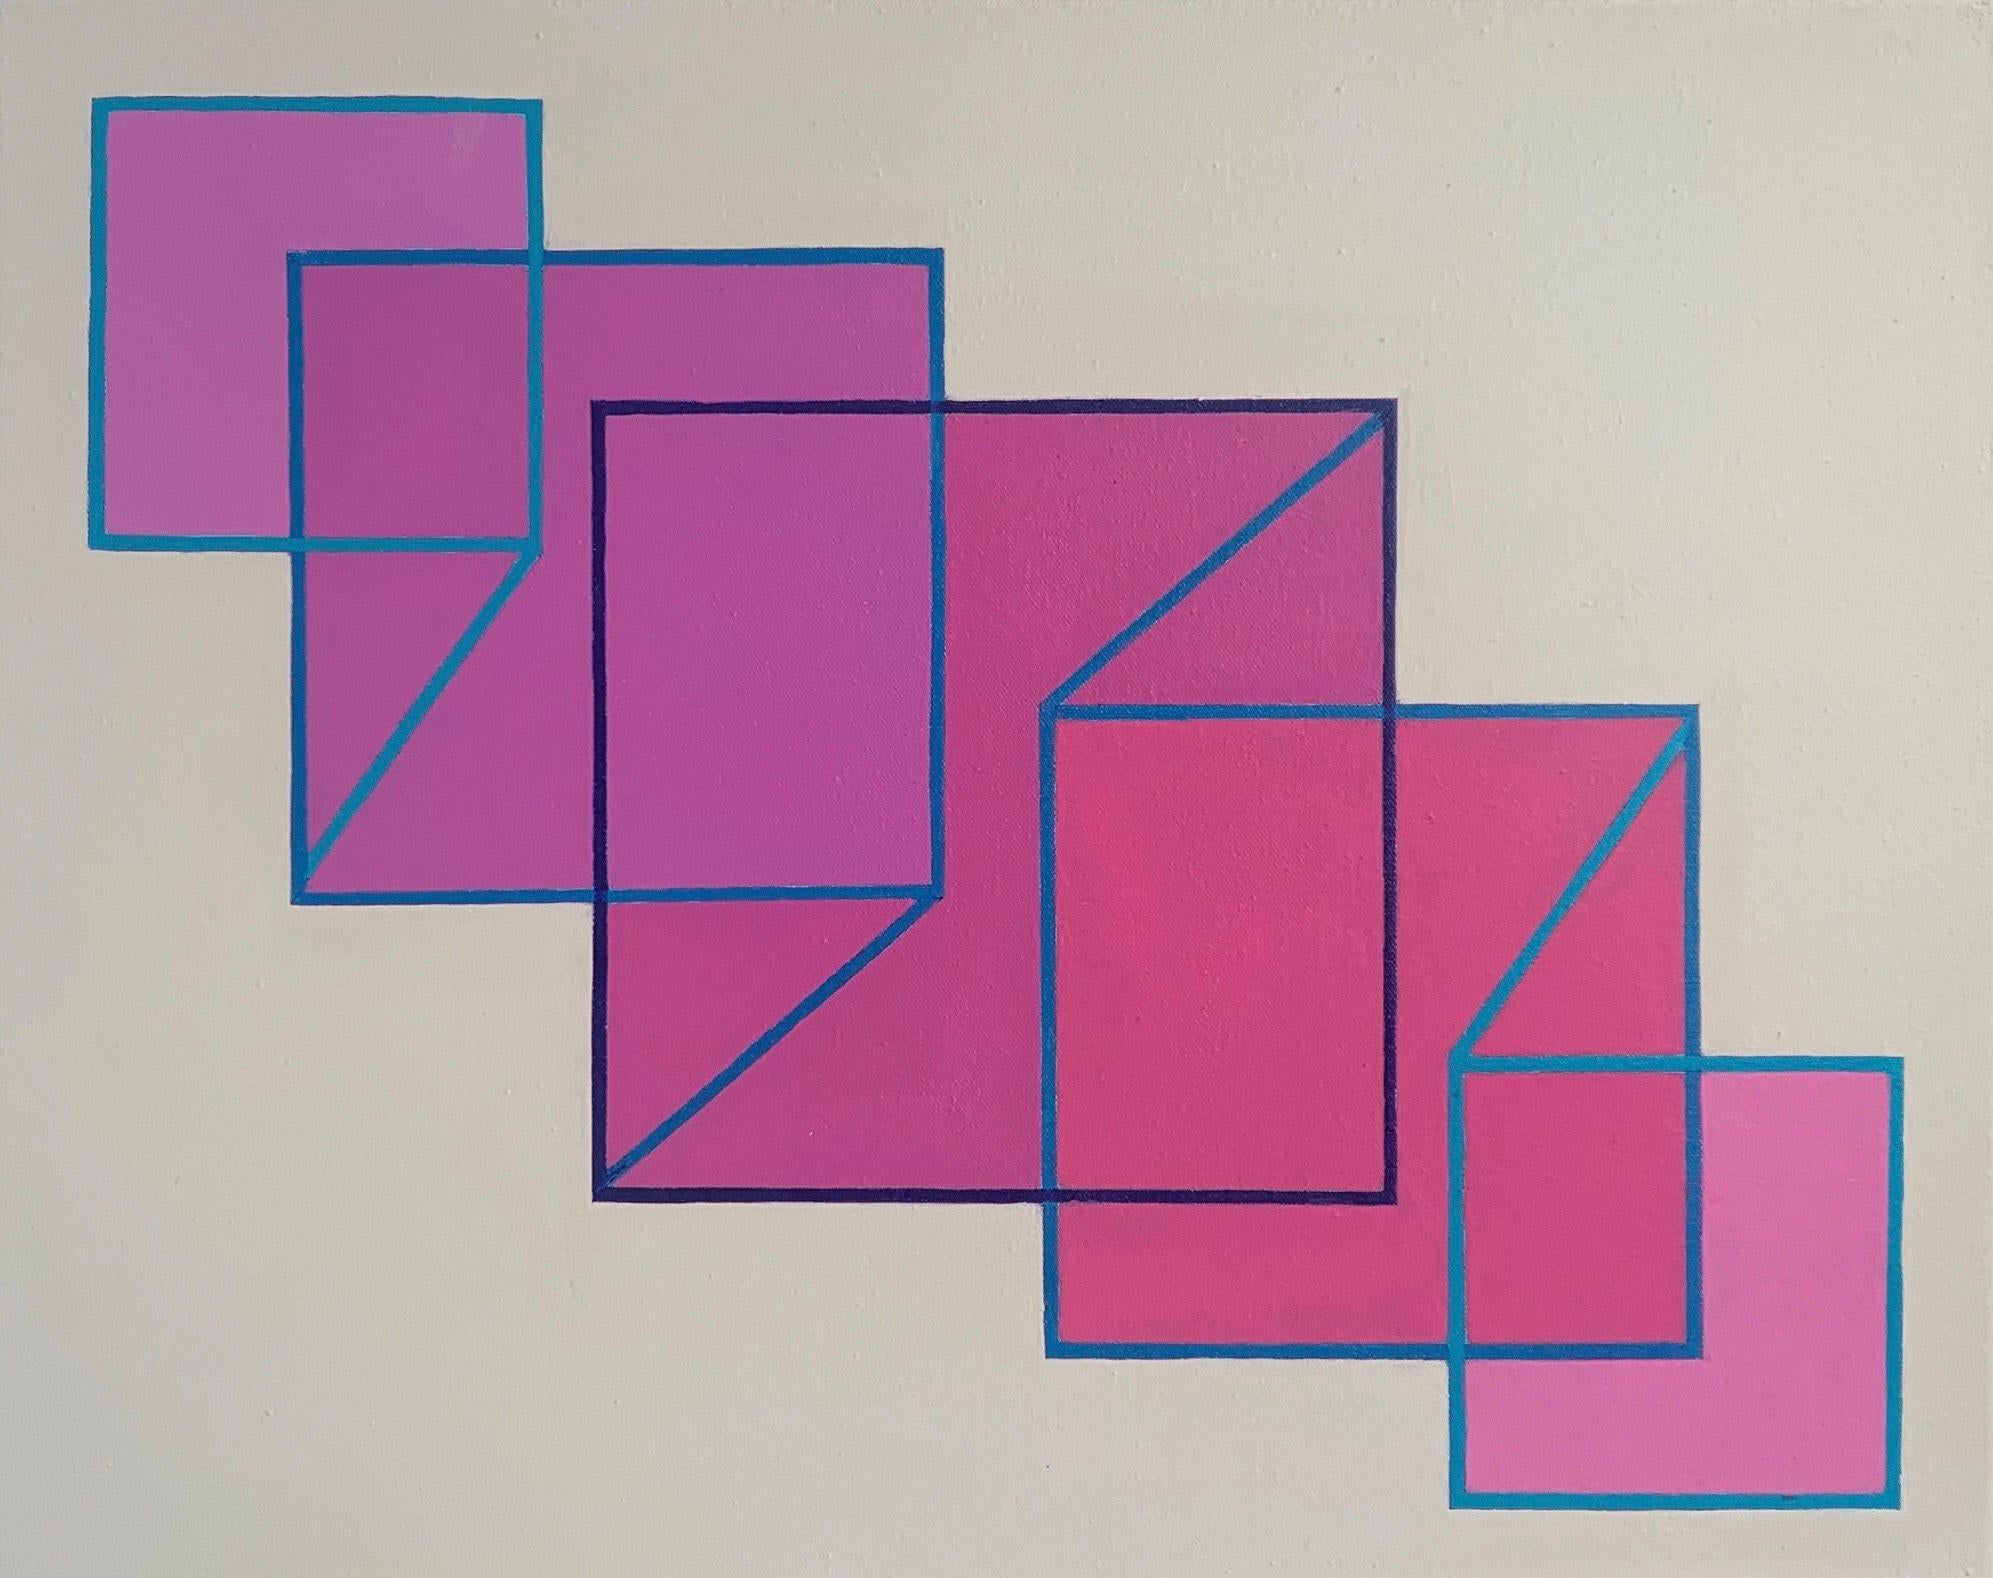 Abstract Painting Benjamin Weaver - Expansion/Contraction n° 23 : peinture géométrique abstraite Op Art, carrés roses